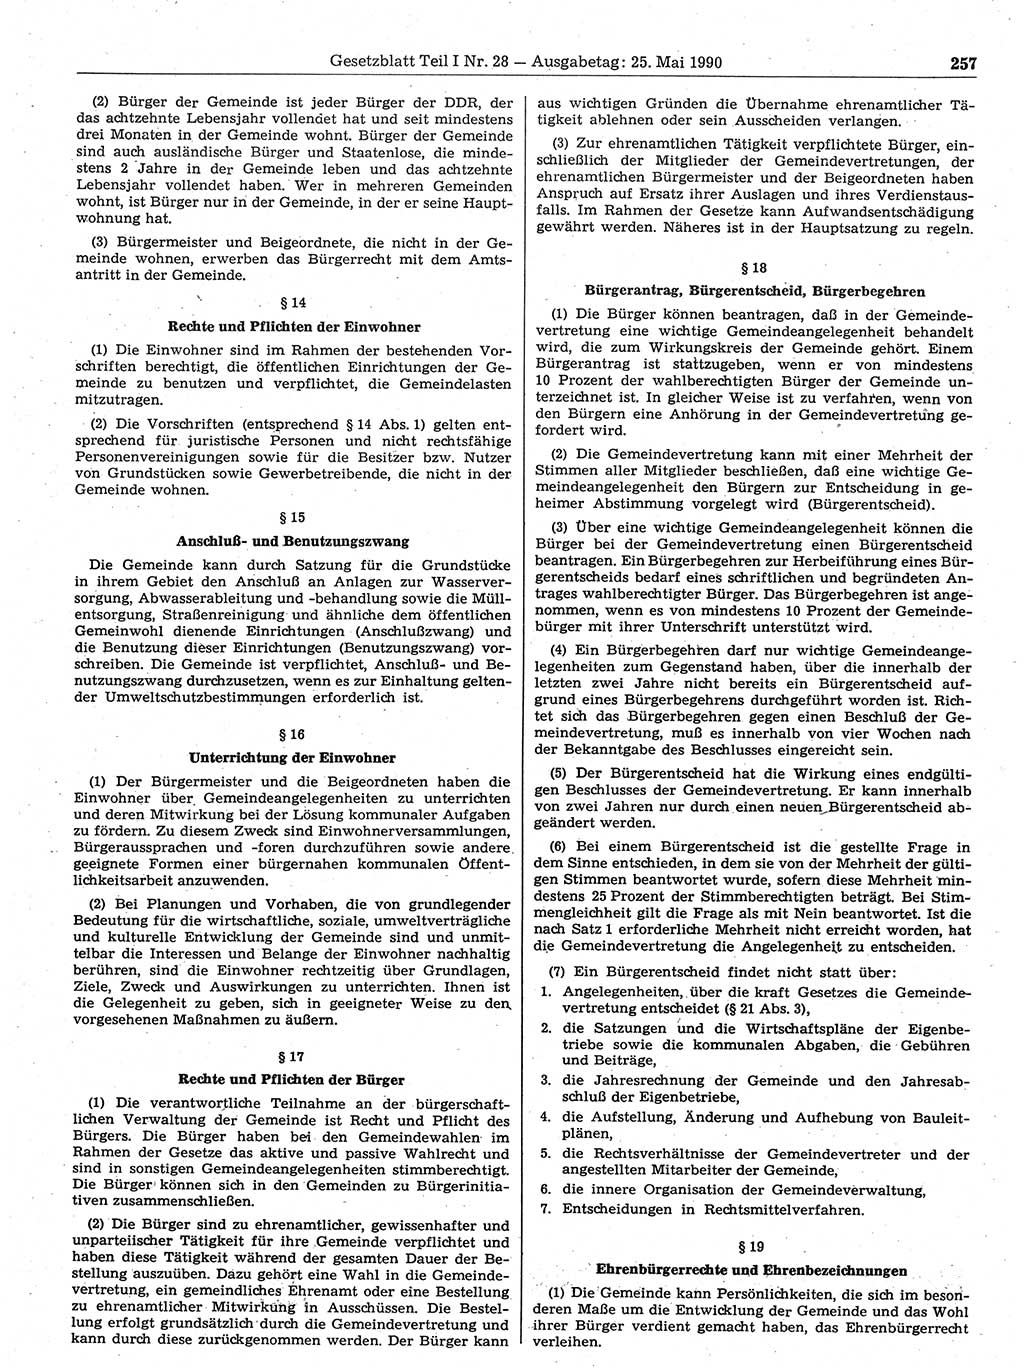 Gesetzblatt (GBl.) der Deutschen Demokratischen Republik (DDR) Teil Ⅰ 1990, Seite 257 (GBl. DDR Ⅰ 1990, S. 257)